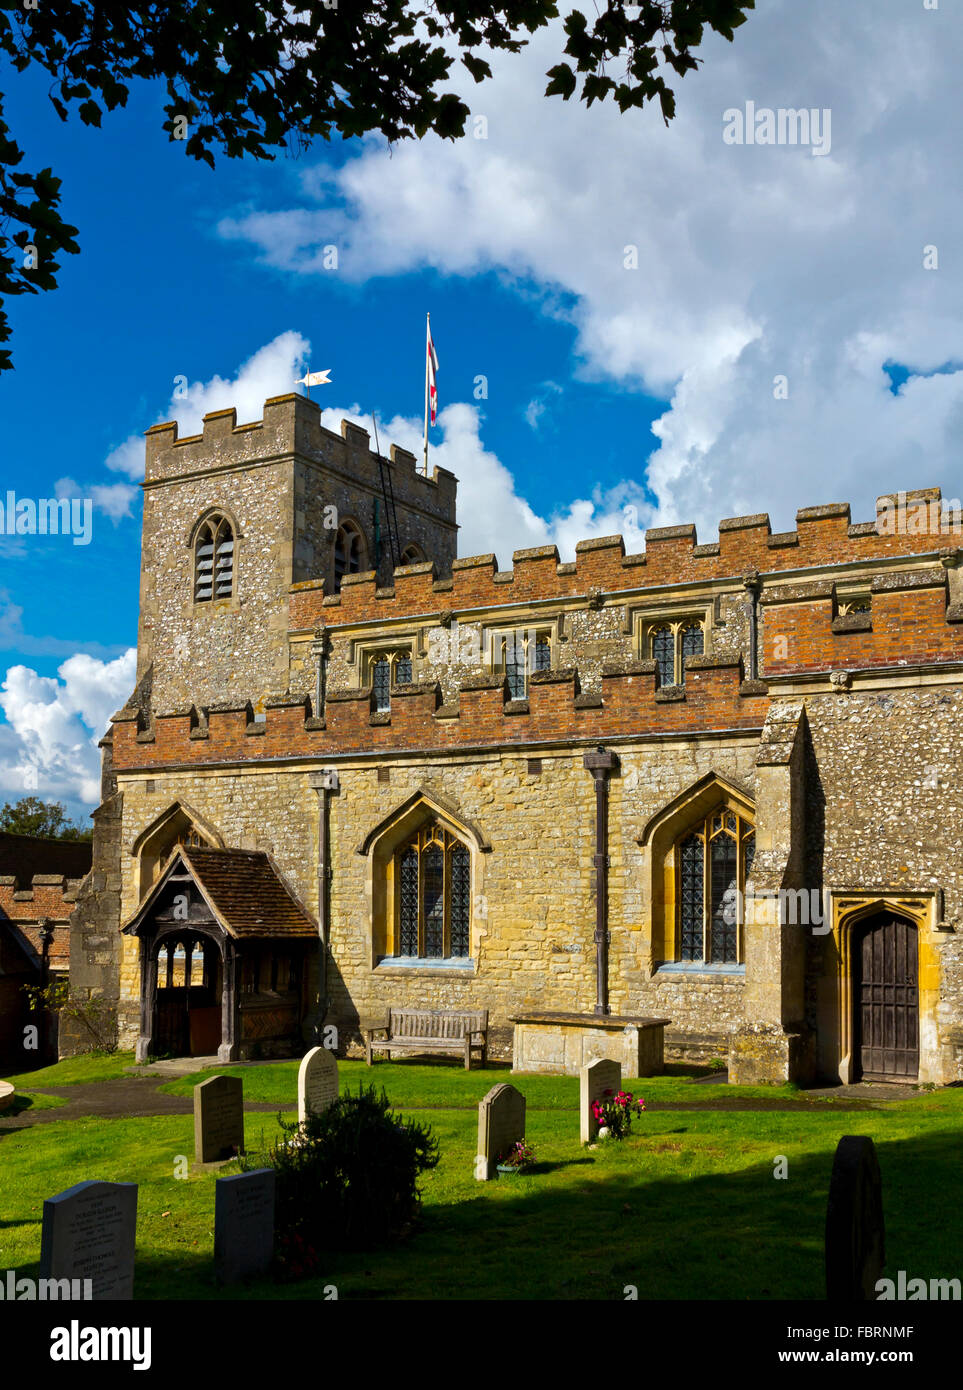 Außenansicht von der mittelalterlichen Pfarrkirche Saint Mary Jungfrau in ein Dorf in South Oxfordshire England UK Ewelme Stockfoto